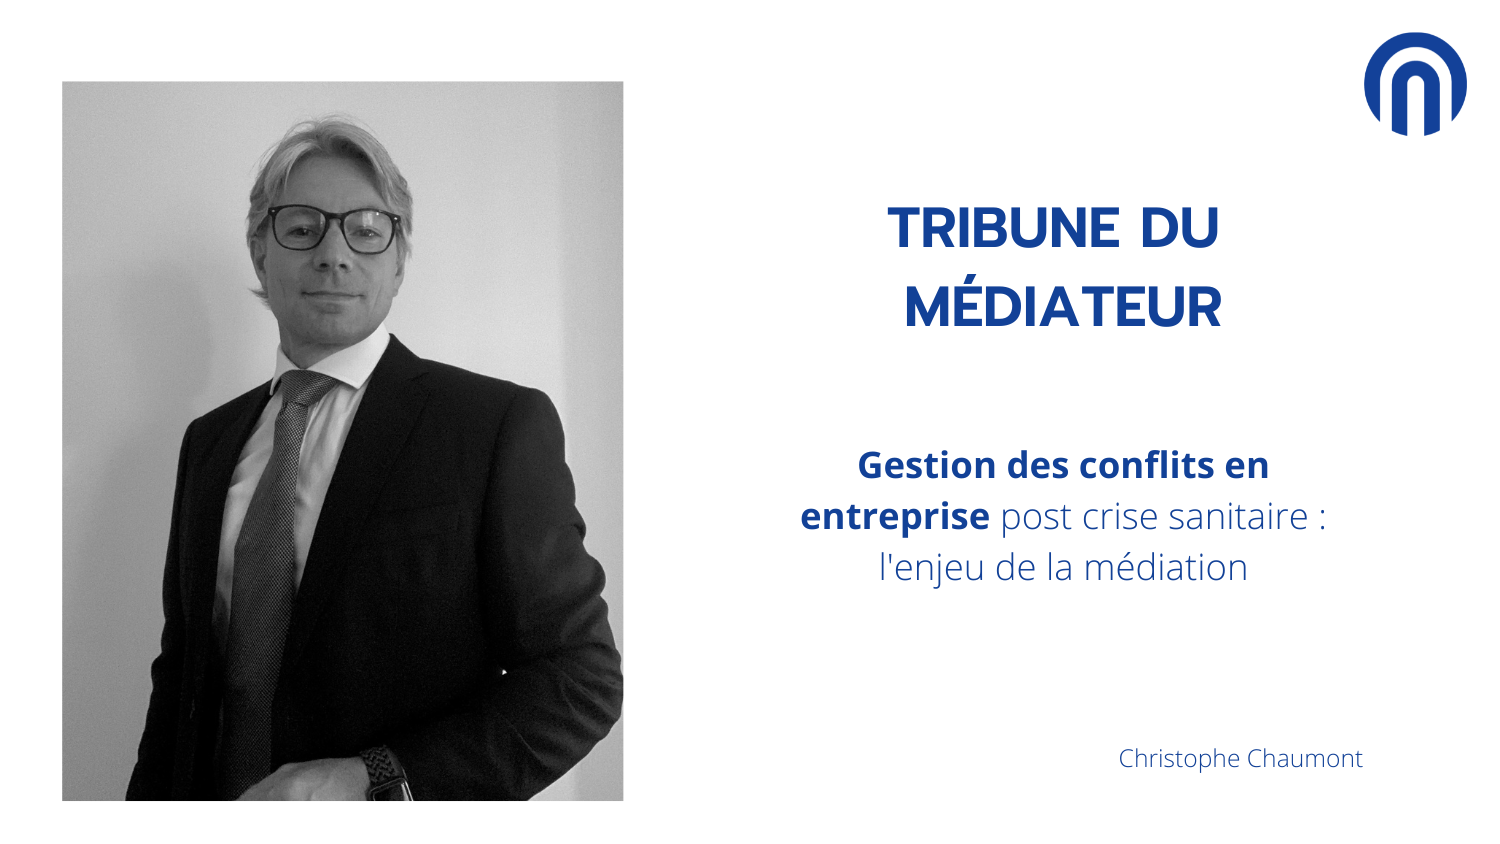 Tribune de médiateur - Christophe Chaumont